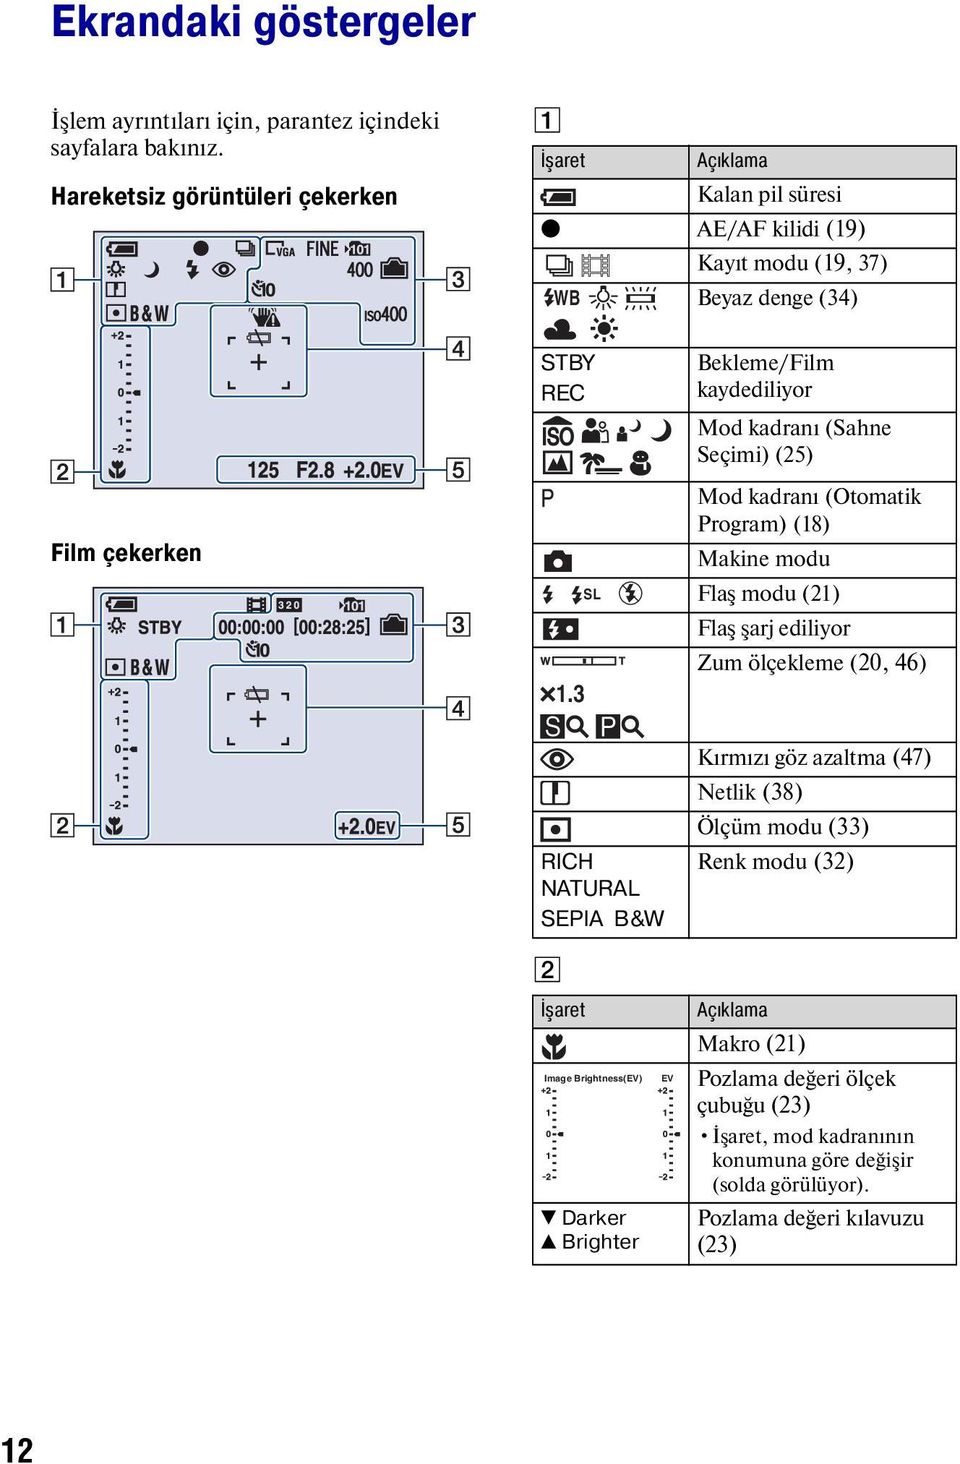 3 SL Bekleme/Film kaydediliyor Mod kadranı (Sahne Seçimi) (25) Mod kadranı (Otomatik Program) (18) Makine modu Flaş modu (21) Flaş şarj ediliyor Zum ölçekleme (20, 46) RICH